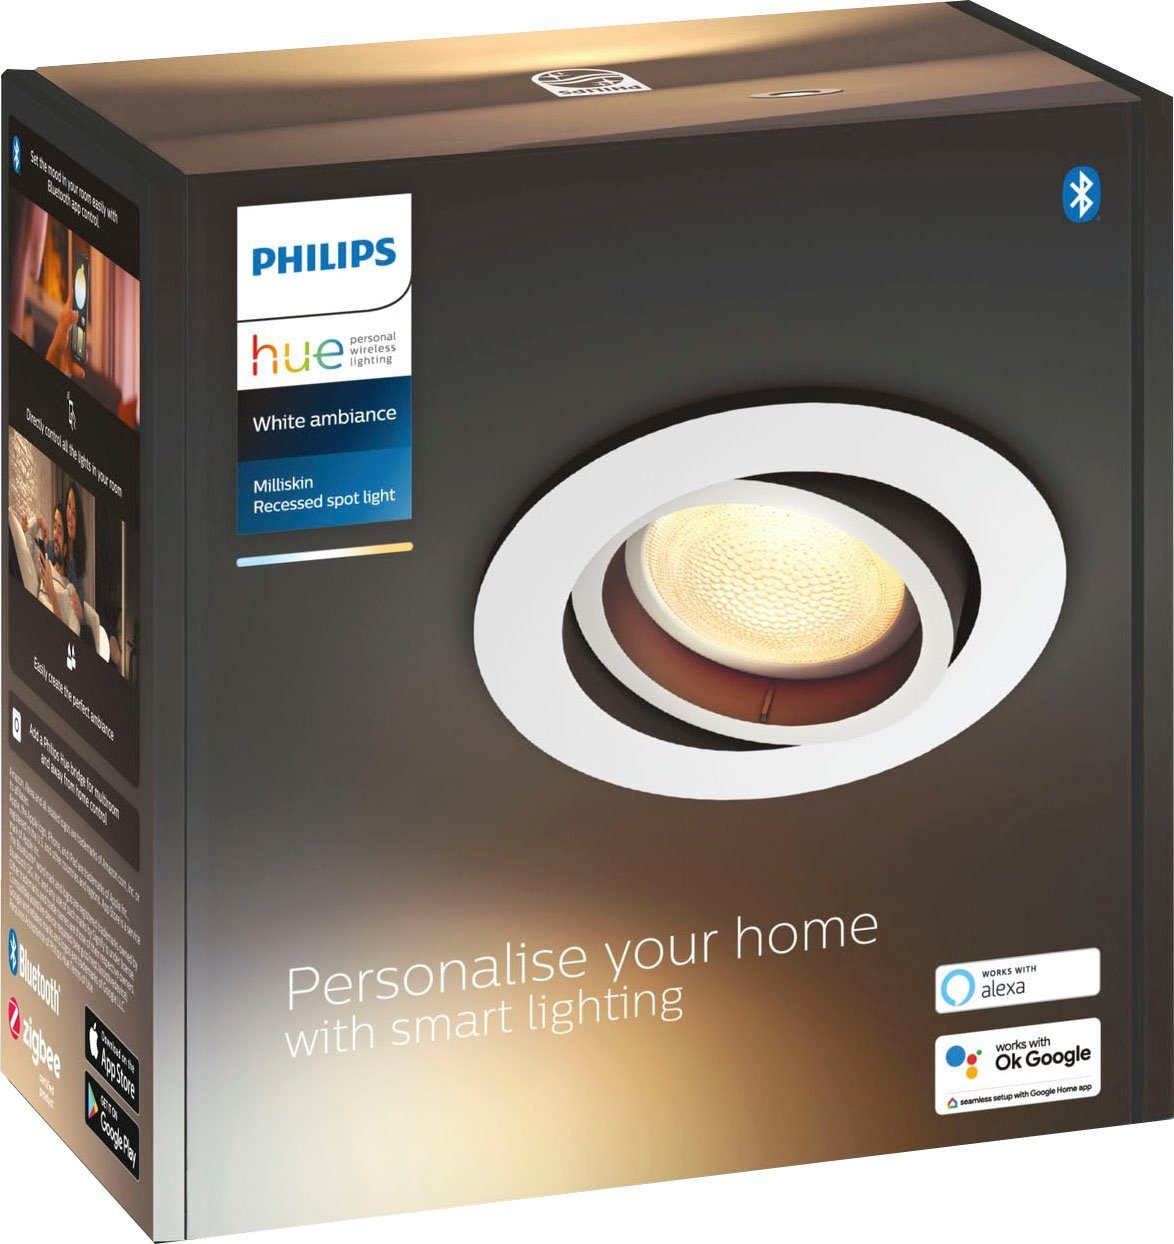 Milliskin, Philips LED Warmweiß Flutlichtstrahler wechselbar, Dimmfunktion, Hue Leuchtmittel